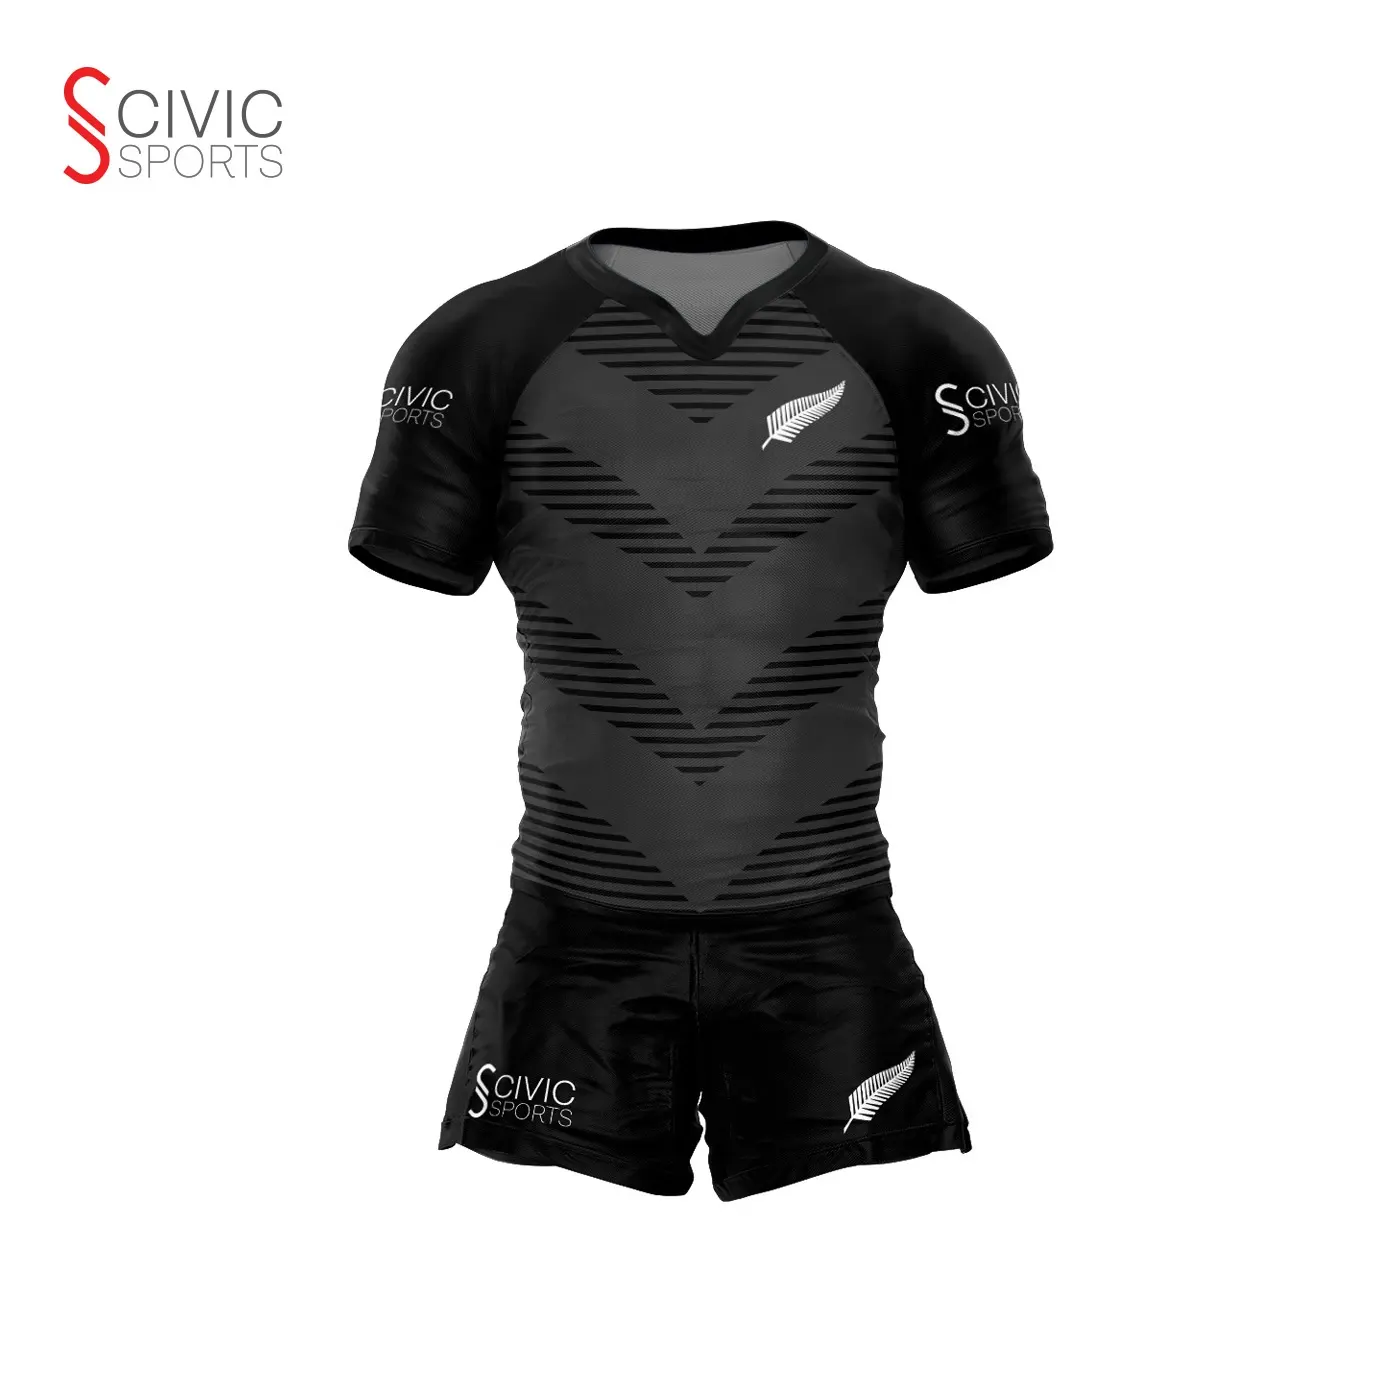 Proveedores OEM de camisetas de Rugby uniformes de Liga y pantalones cortos ropa de fútbol barata Jersey de Rugby personalizado para la venta